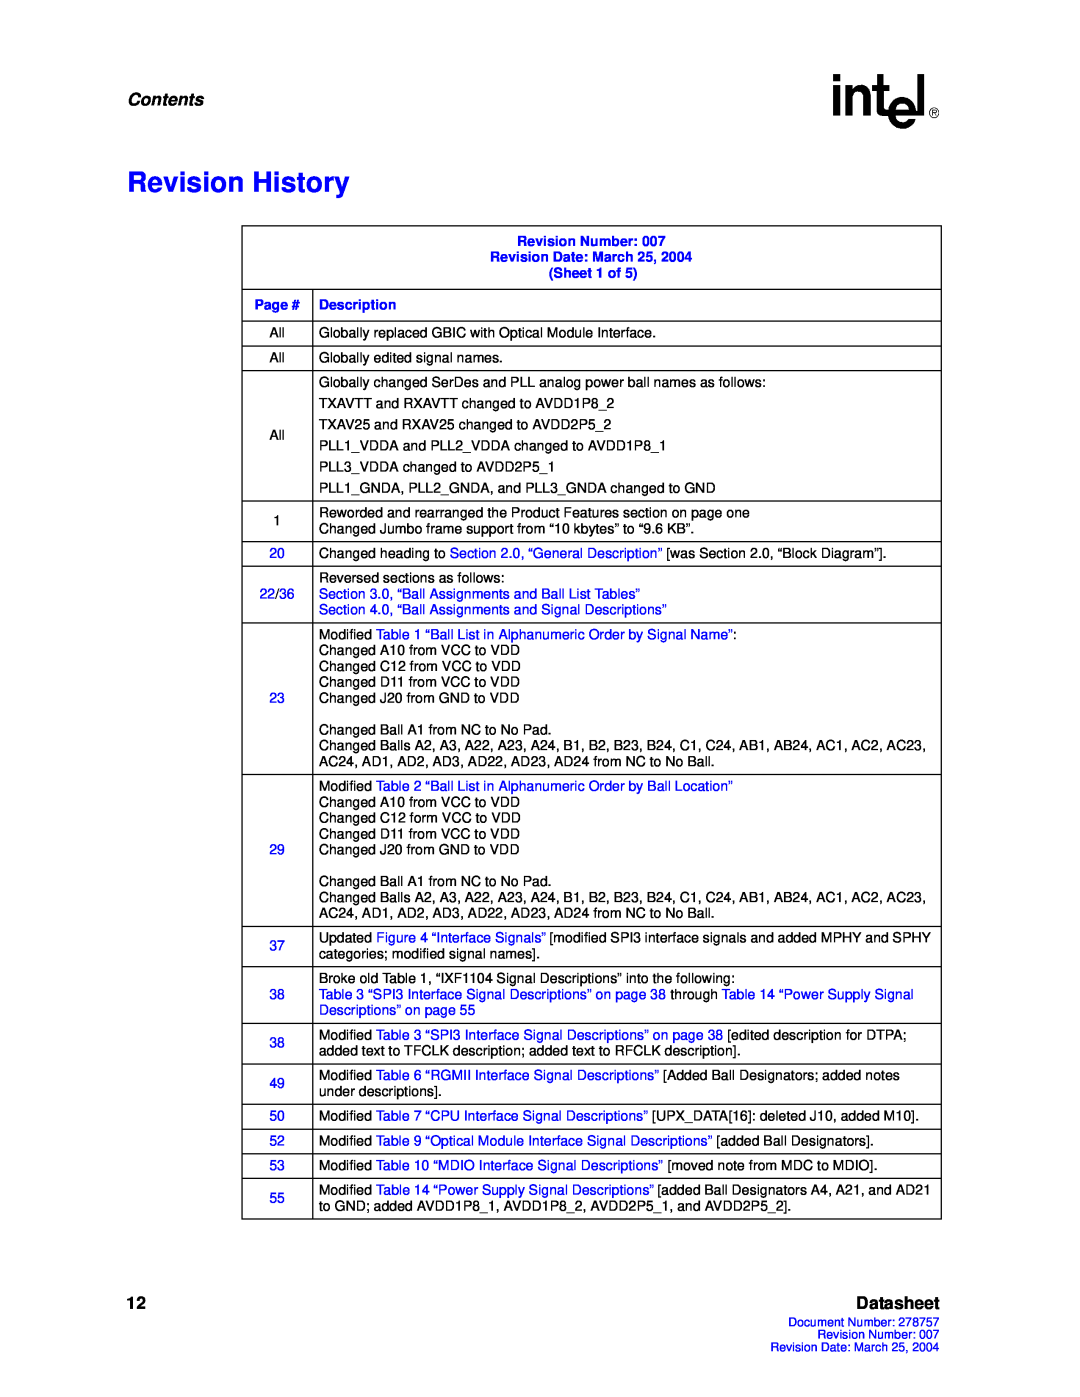 Intel IXF1104 manual Revision History, Contents, Datasheet 